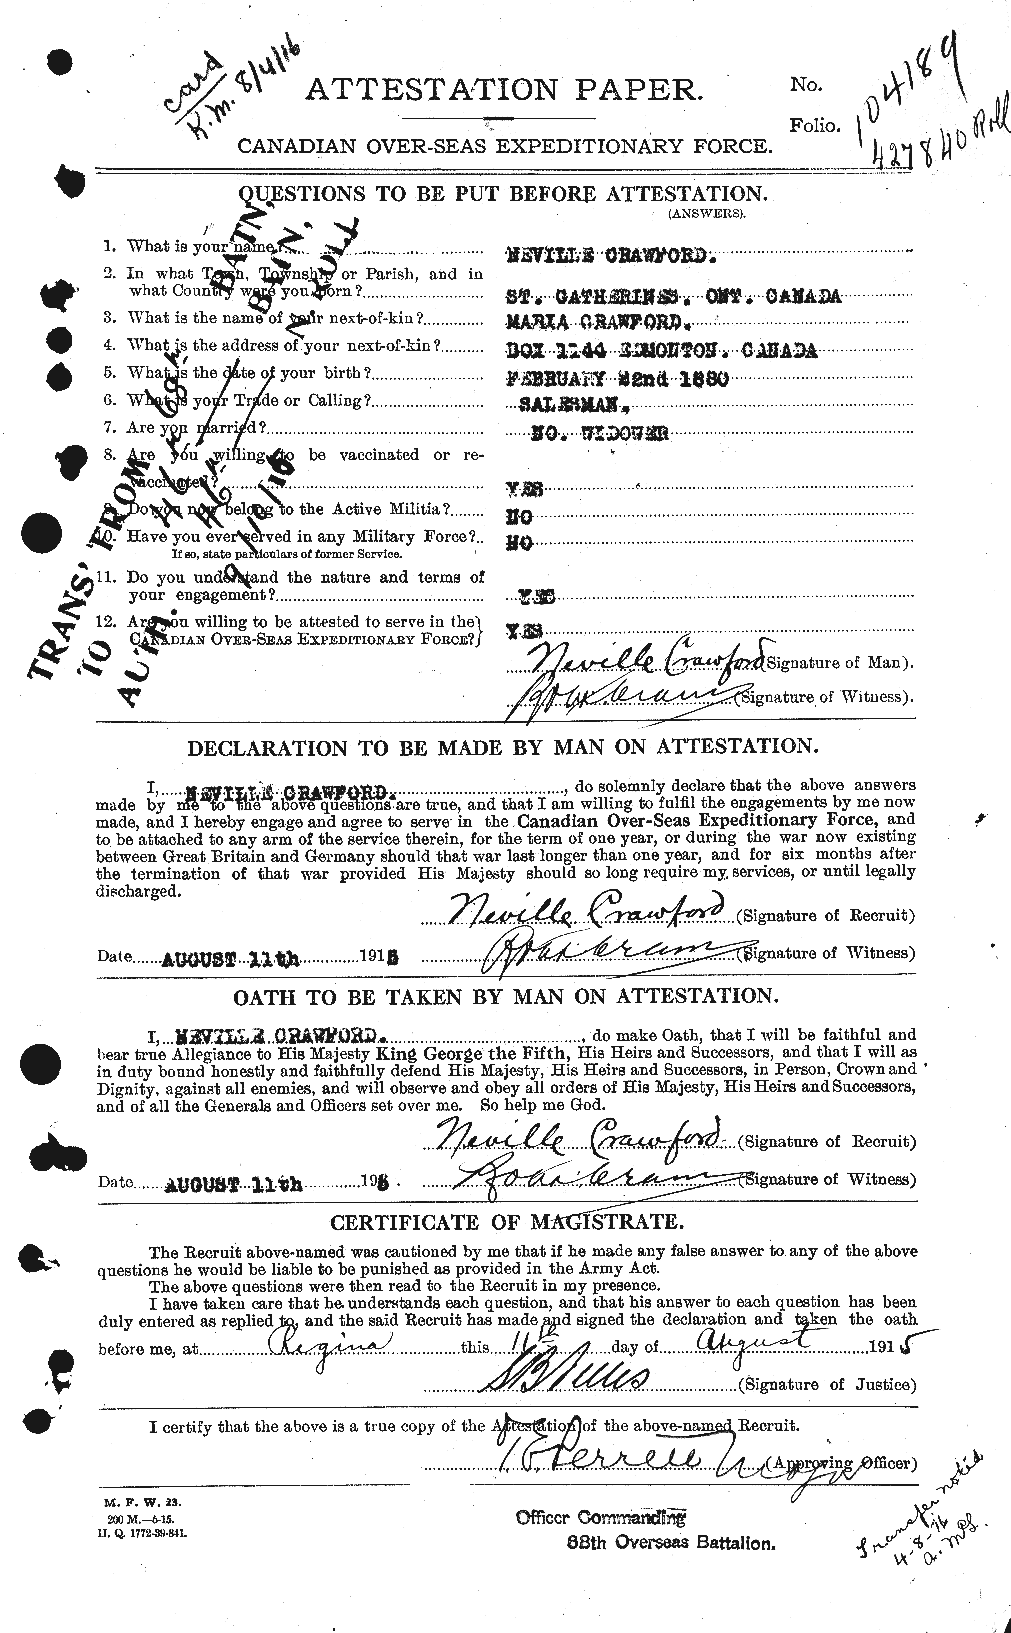 Dossiers du Personnel de la Première Guerre mondiale - CEC 061661a